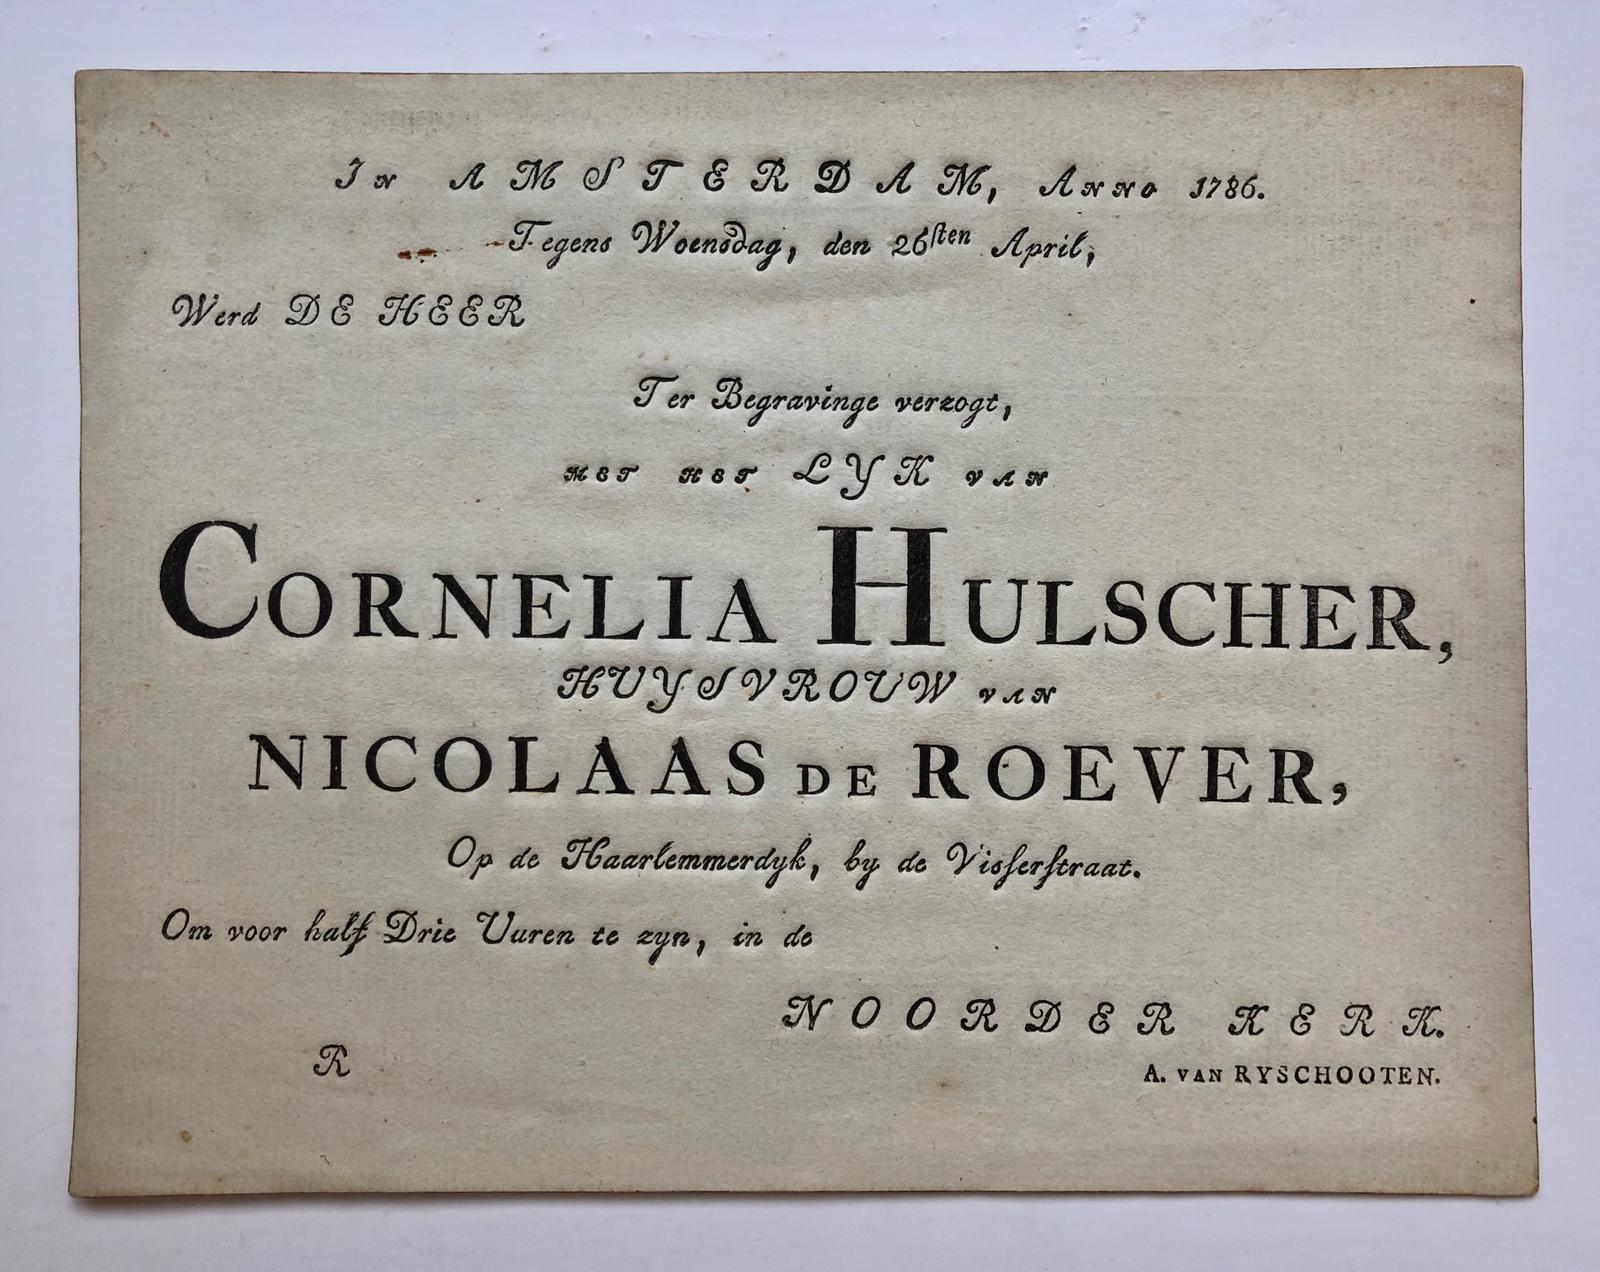  - [Printed invitation] ROEVER, DE; HULSCHER Gedrukte uitnodiging tot bijwoning van de begrafenis van Cornelia Hulscher, huisvrouw van Nicolaas de Roever, op de Haarlemmerdijk. Amsterdam 1786. 4(, oblong, 1 p.